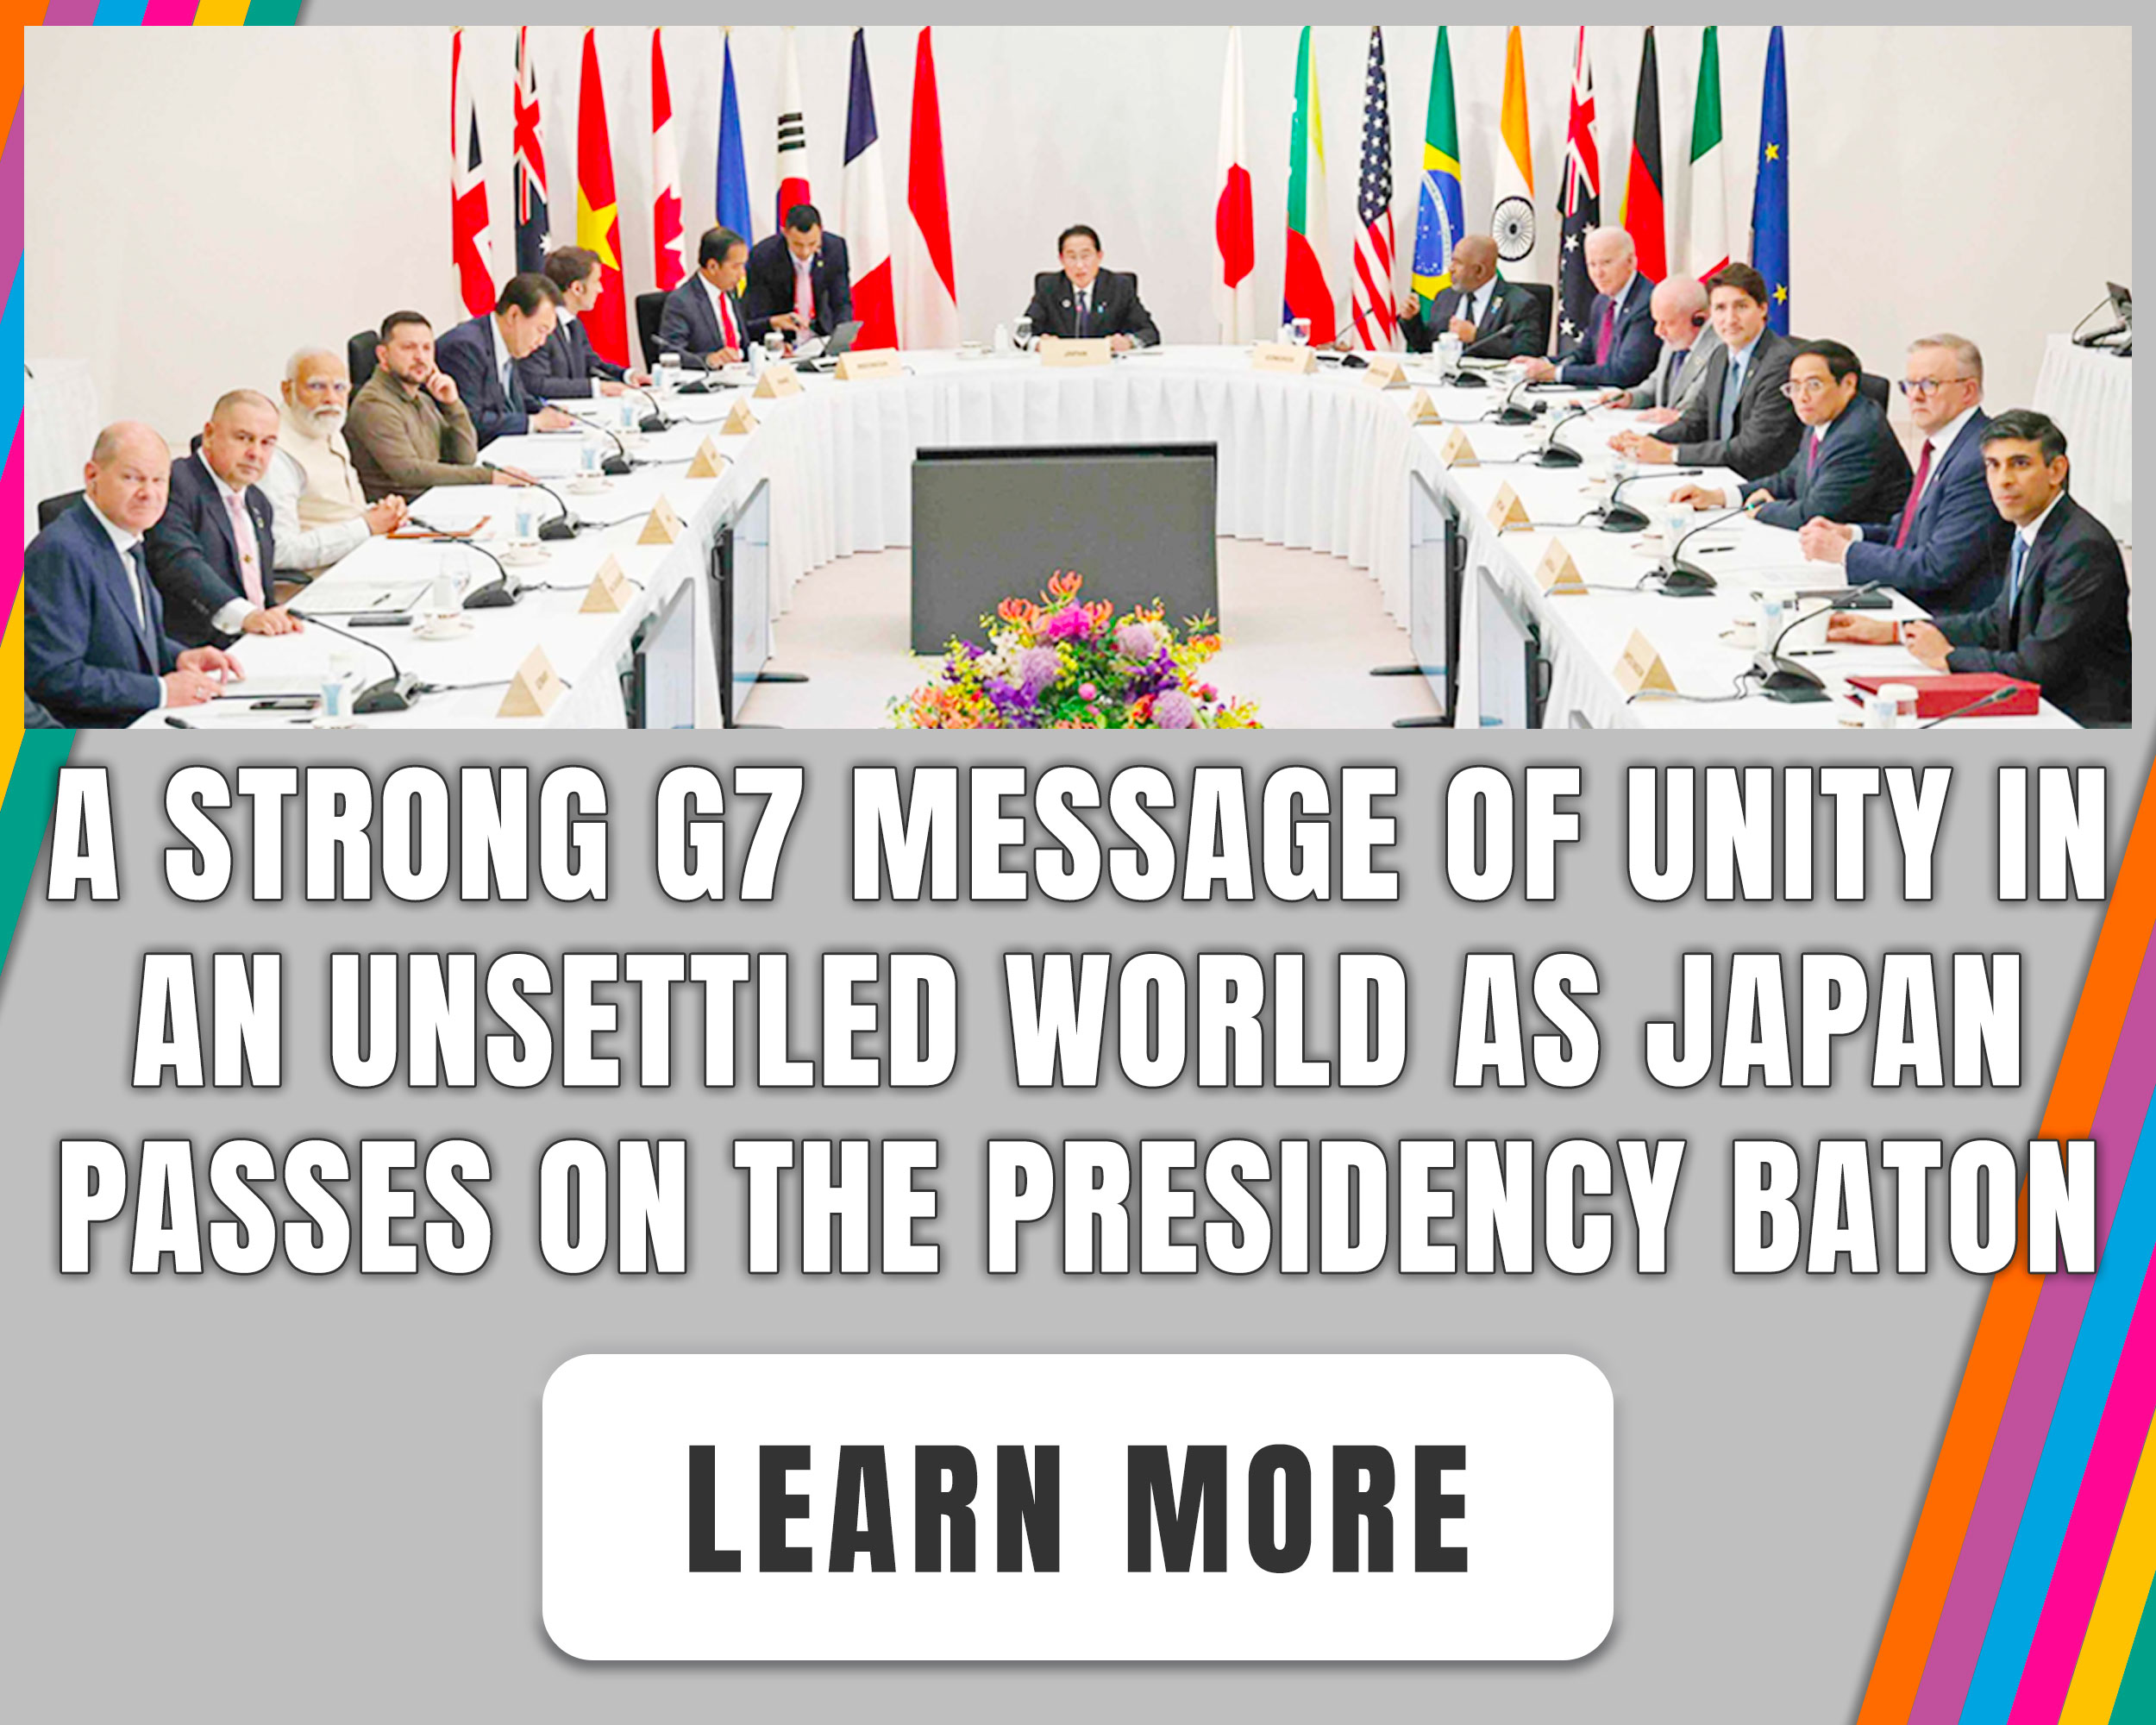 G7 Summit Banner